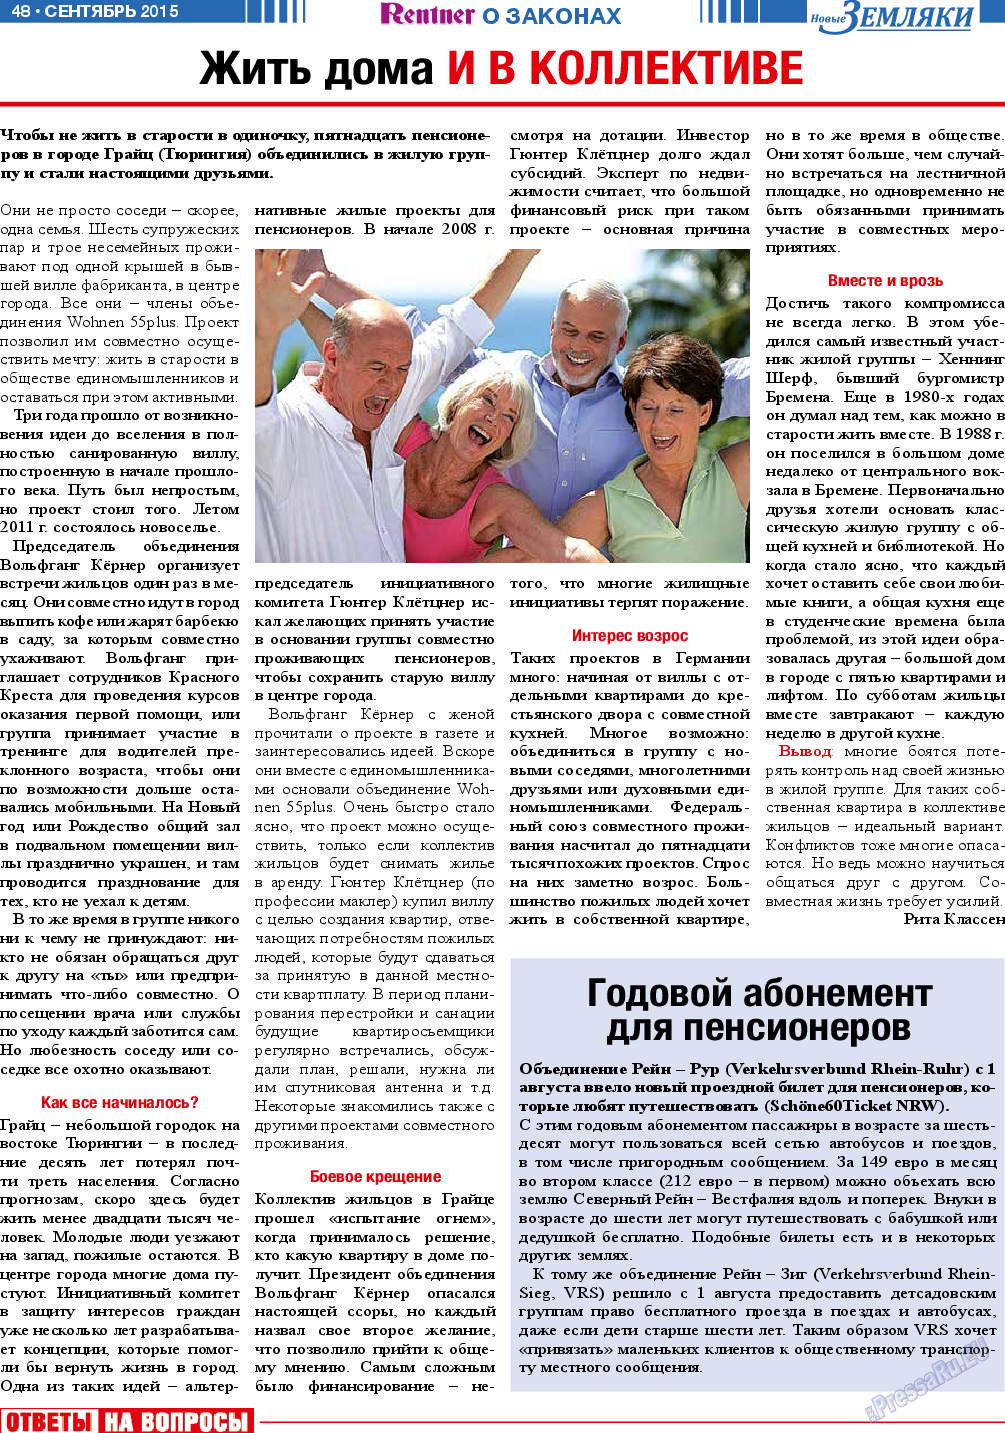 Новые Земляки, газета. 2015 №9 стр.48